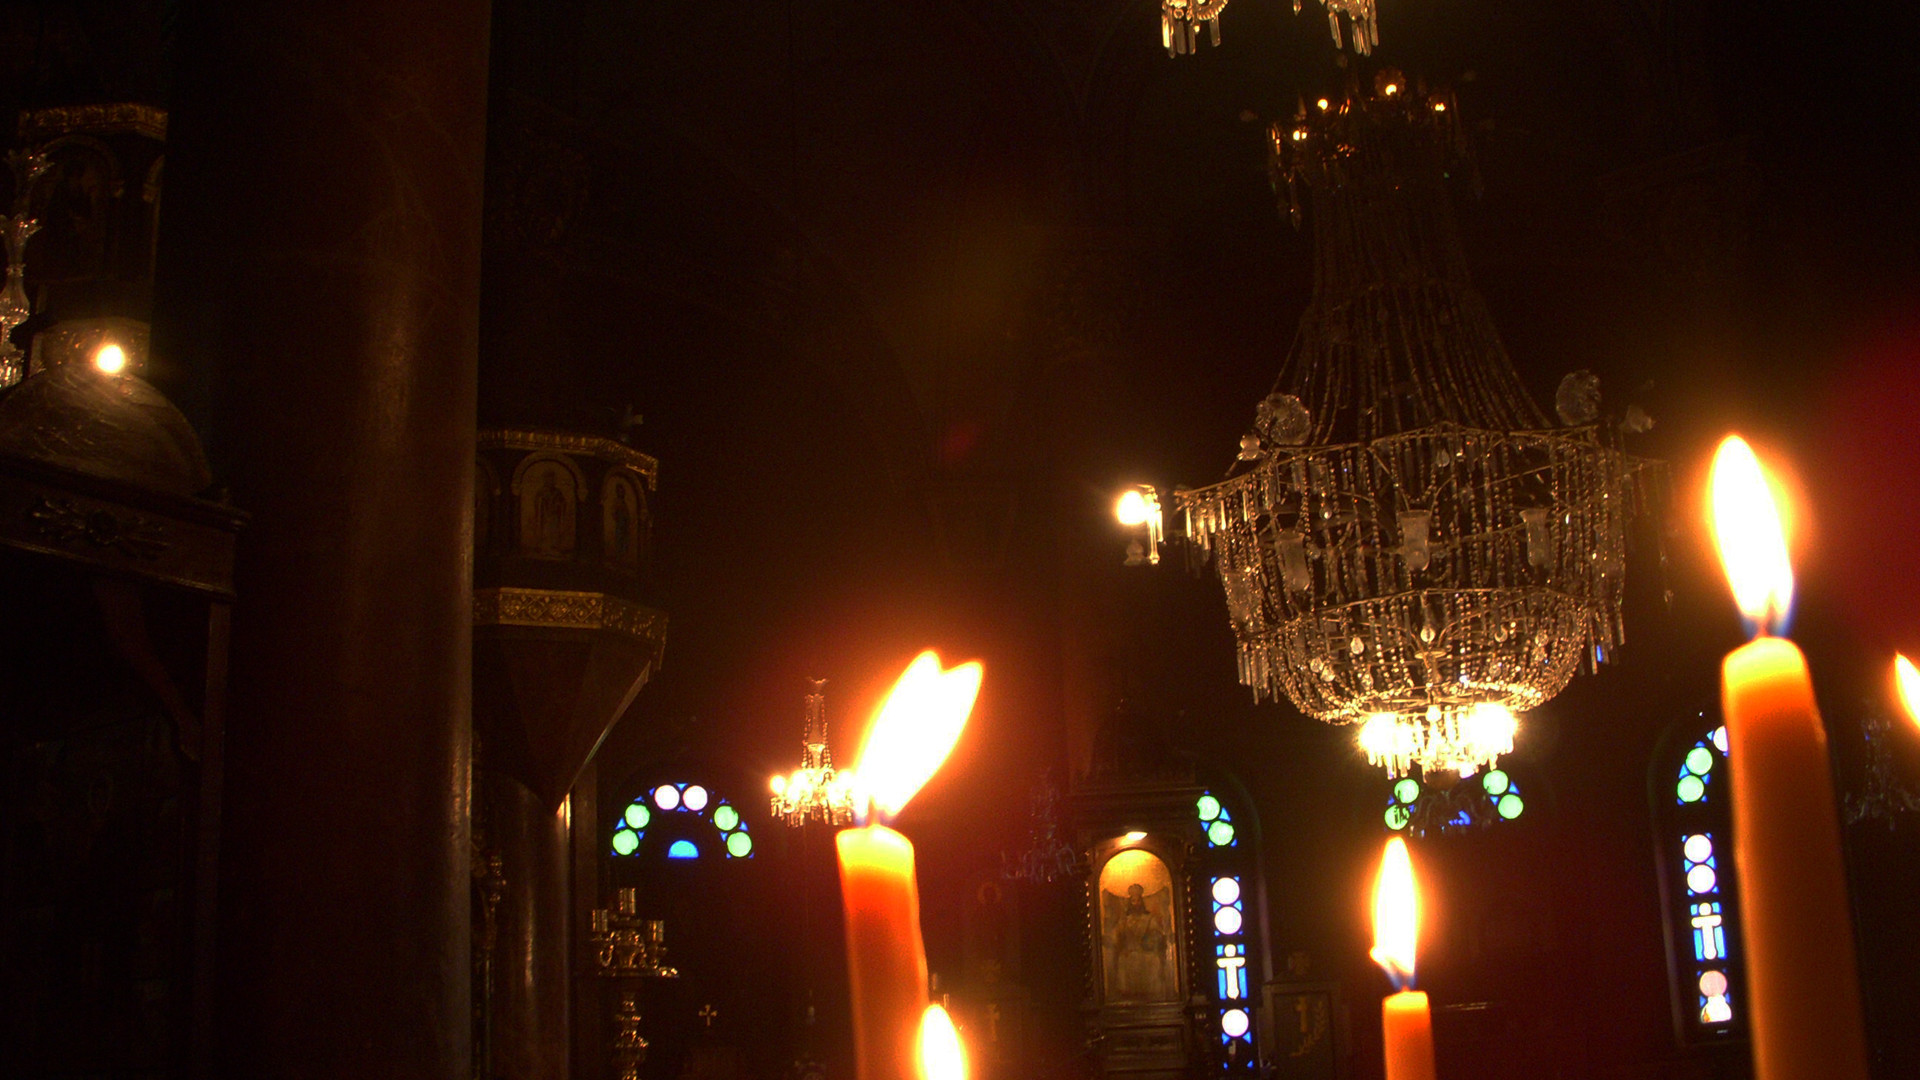 Les coptes orthodoxes d'Egypte célèbrent la Nativité le 7 janvier 2015 (Photo: flickr/se-a-vida-e/cc)